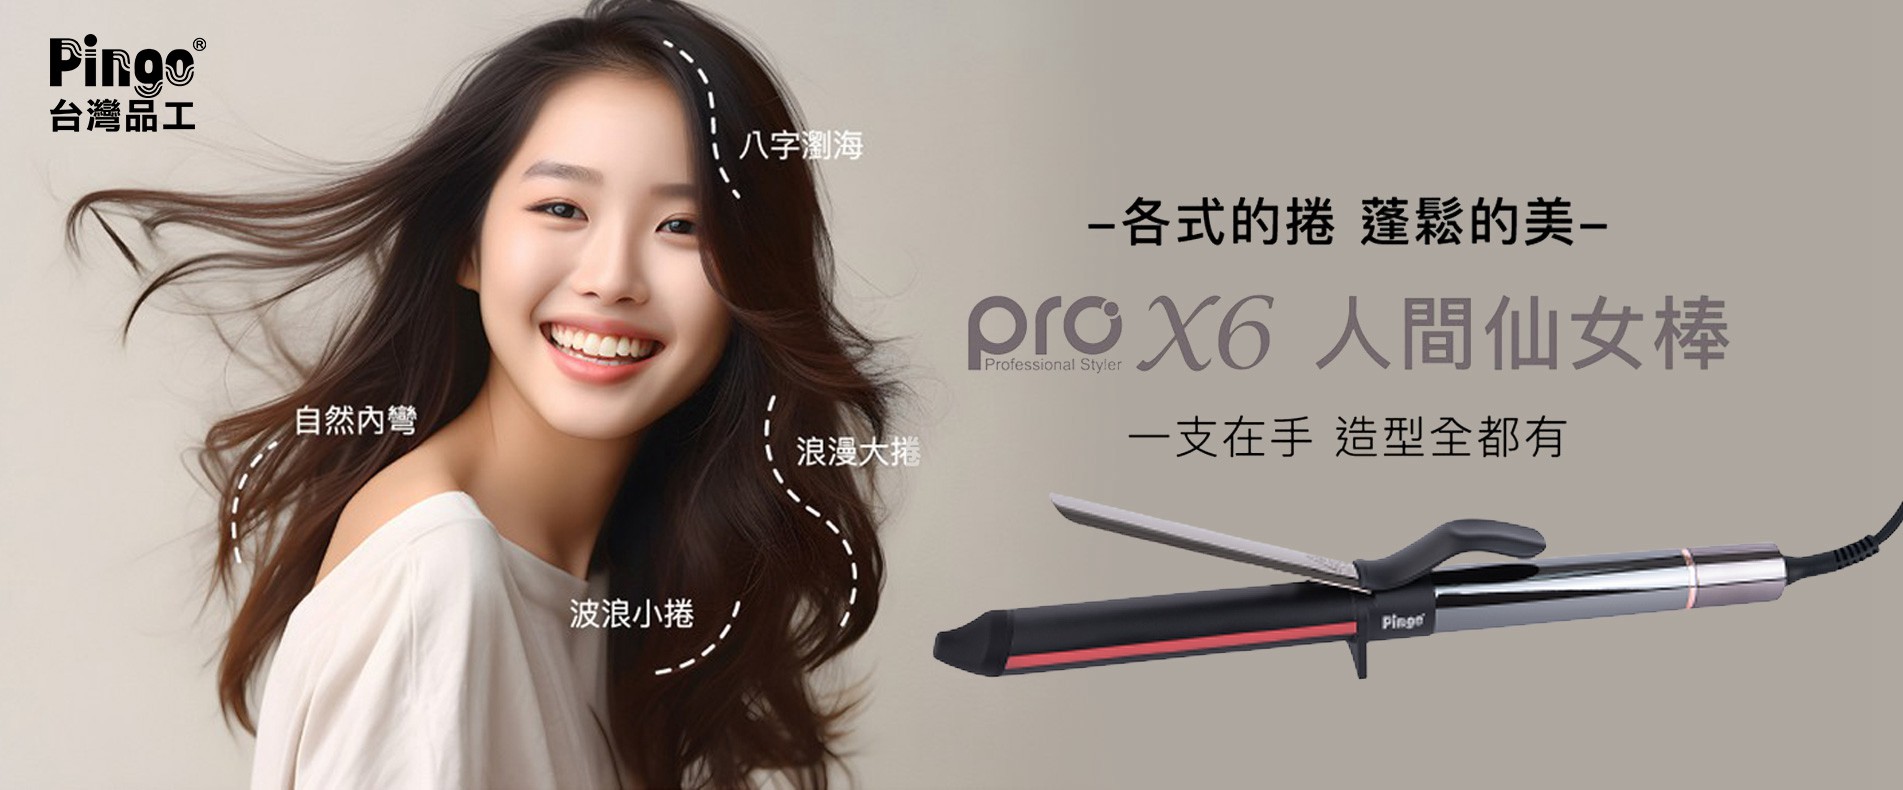 Pingo 台灣品工 PRO X6 橢圓曲線造型電棒